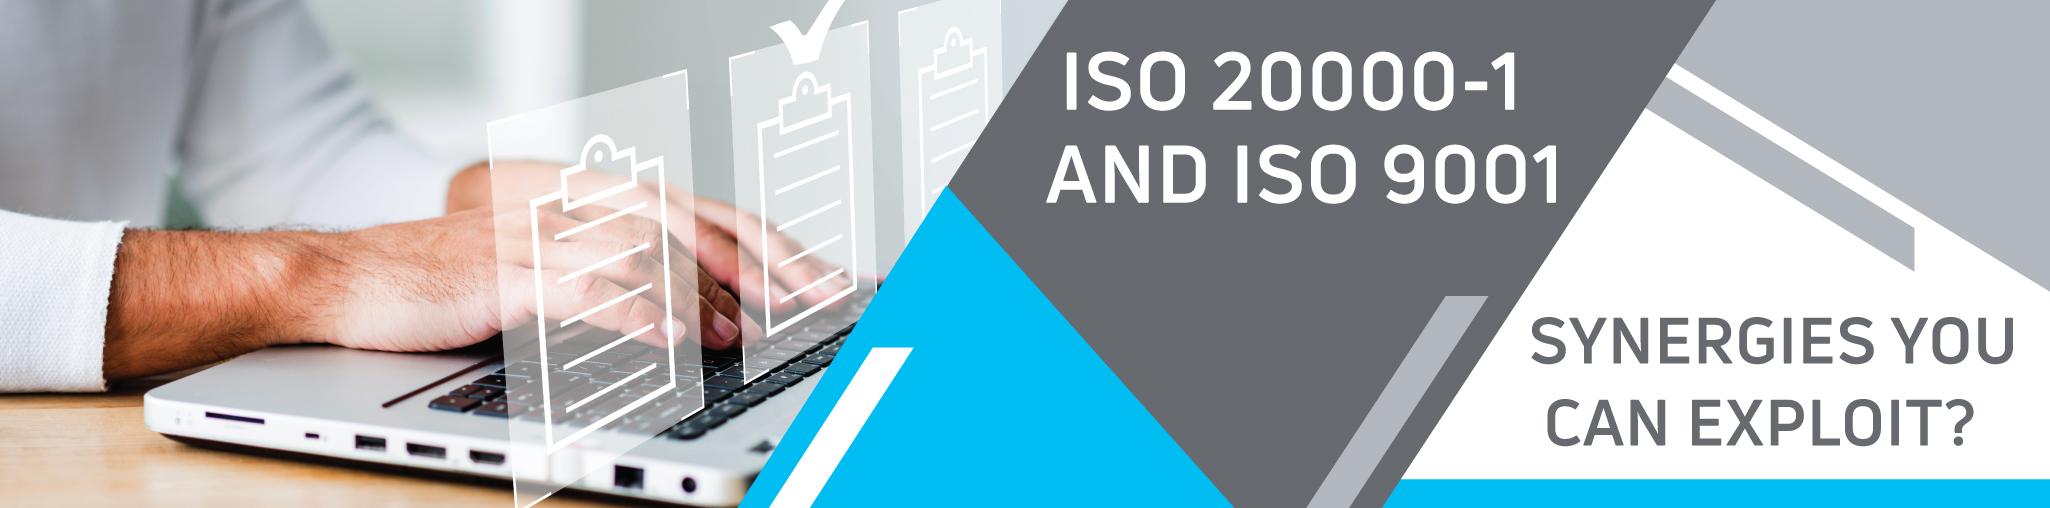 ISO 20000-1 and ISO 9001 Exploitation